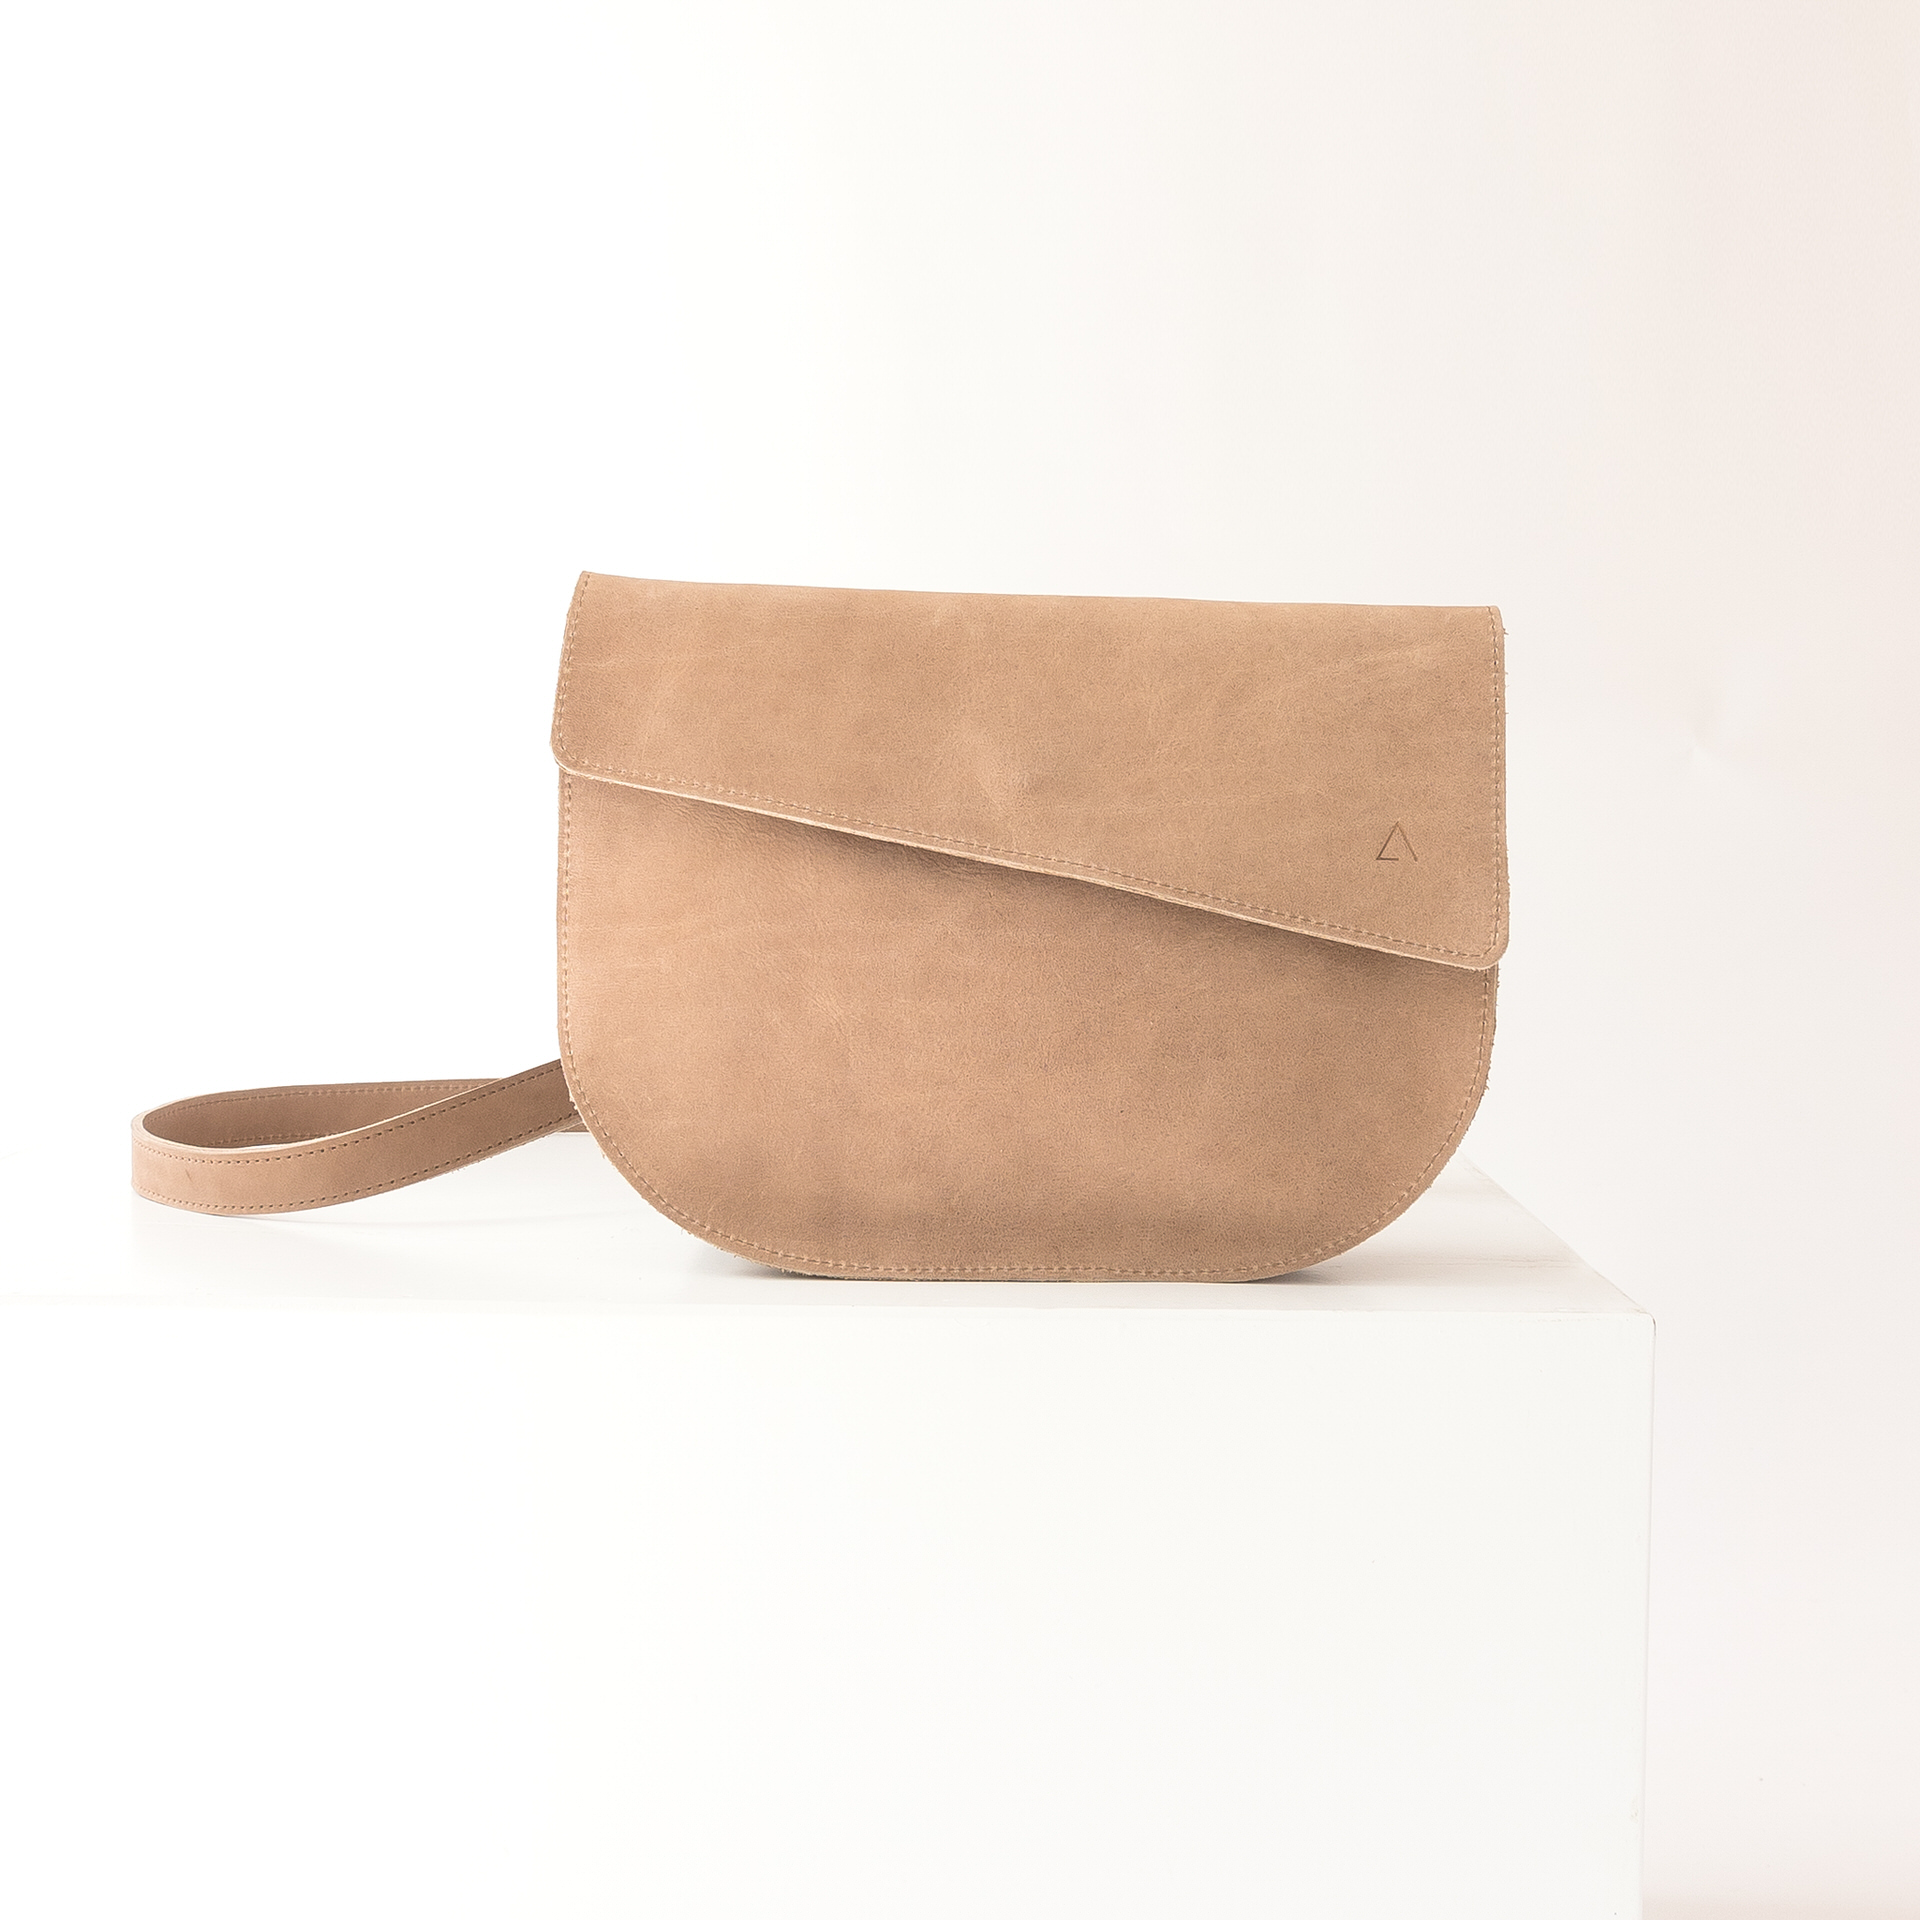 Minimalist design of shoulder bag BEA in light brown